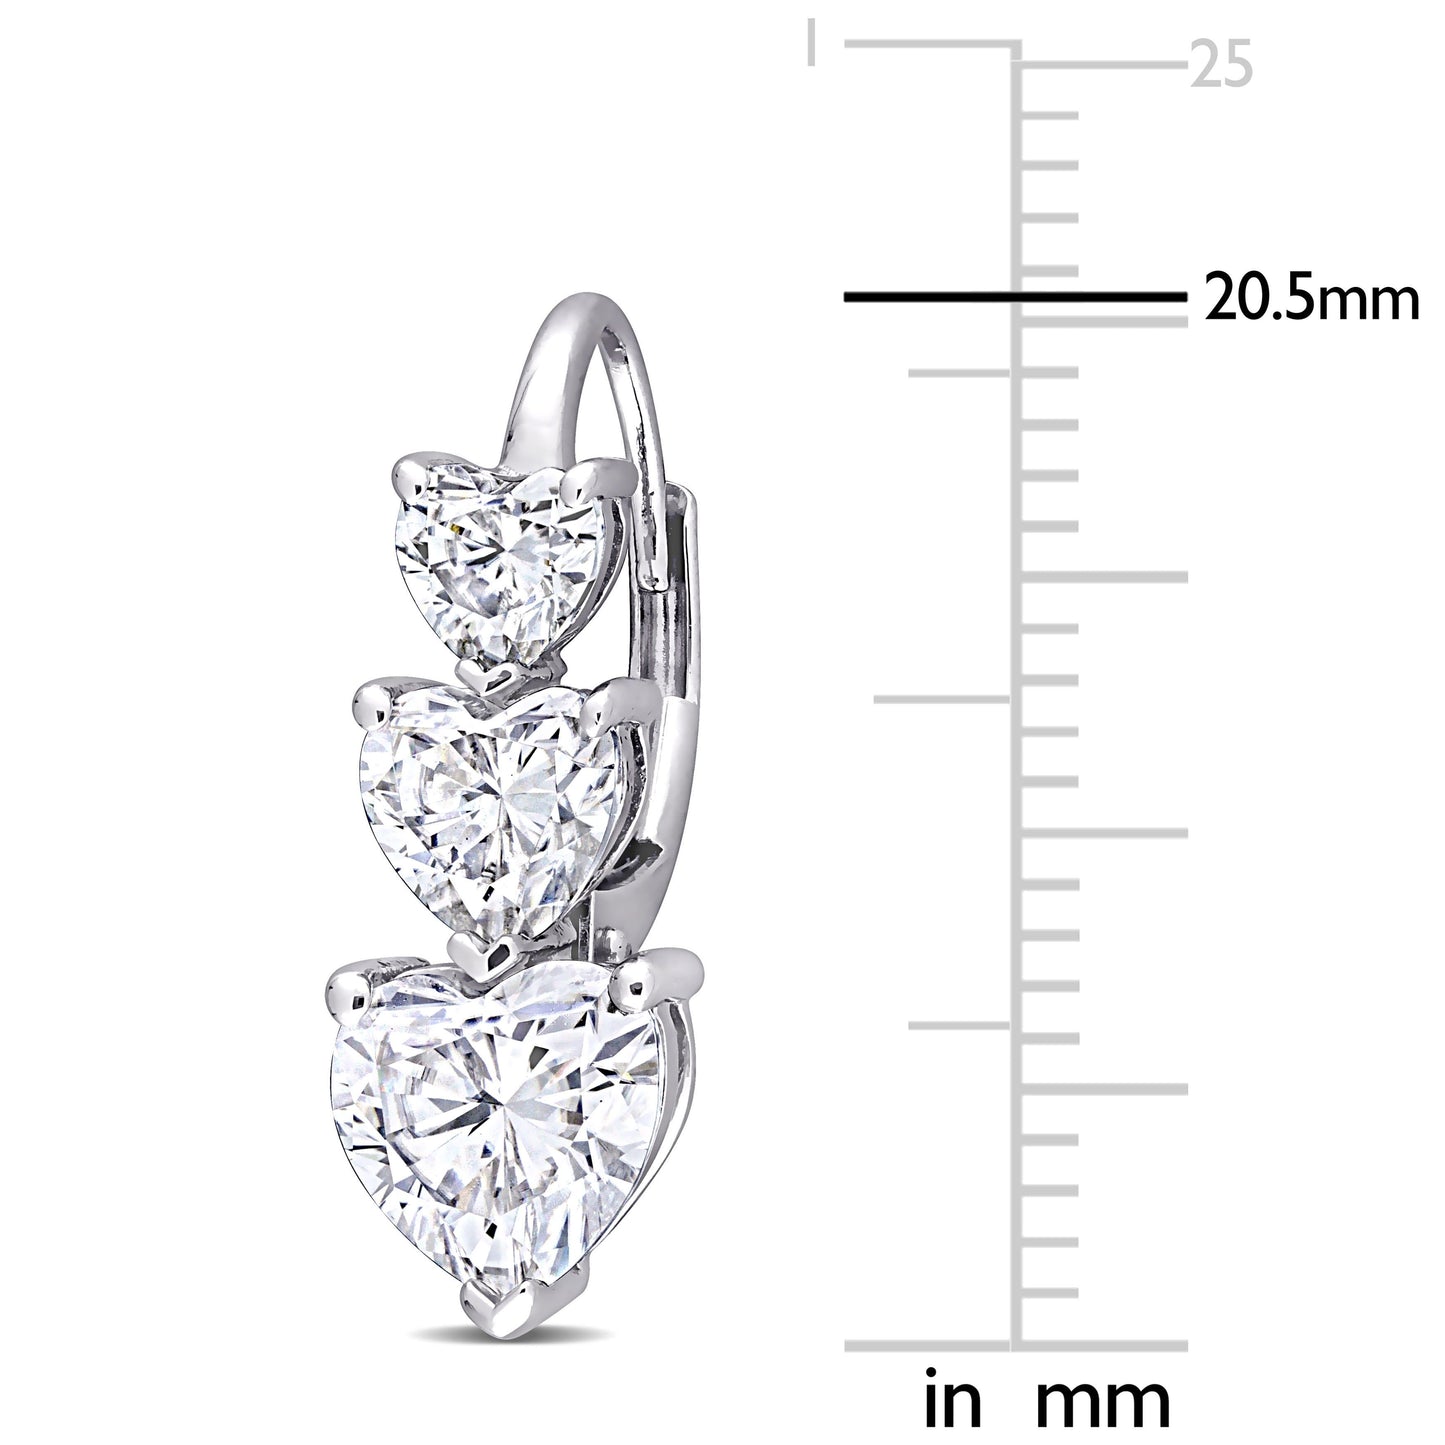 3-Stone Heart Moissanite Earrings in 10k White Gold